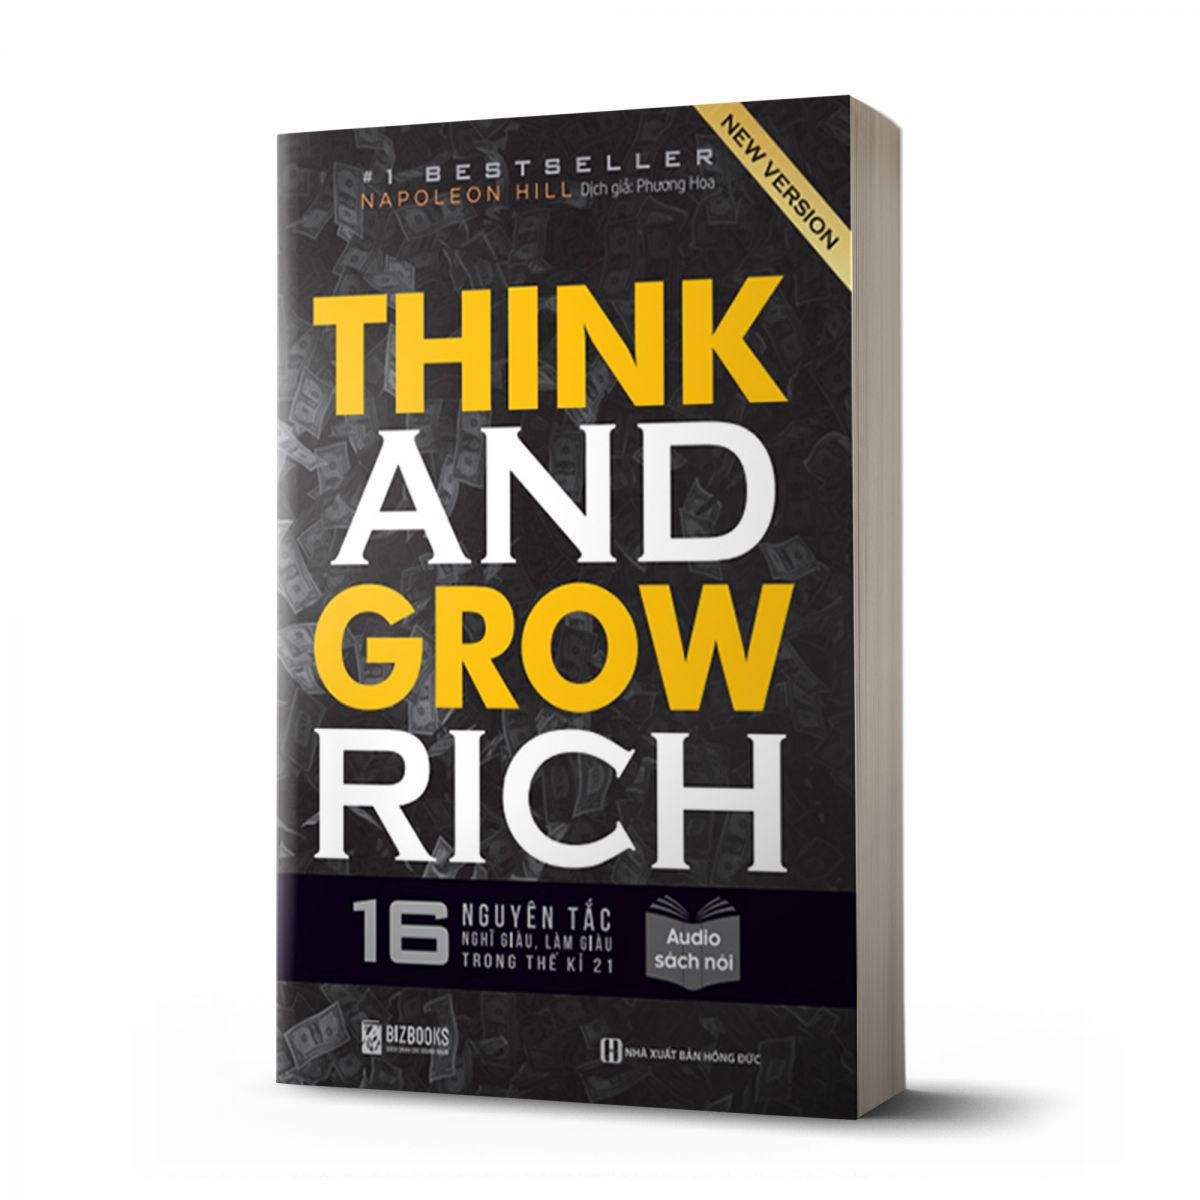 Think and Grow Rich: 16 Nguyên tắc nghĩ giàu làm giàu trong thế kỉ 21